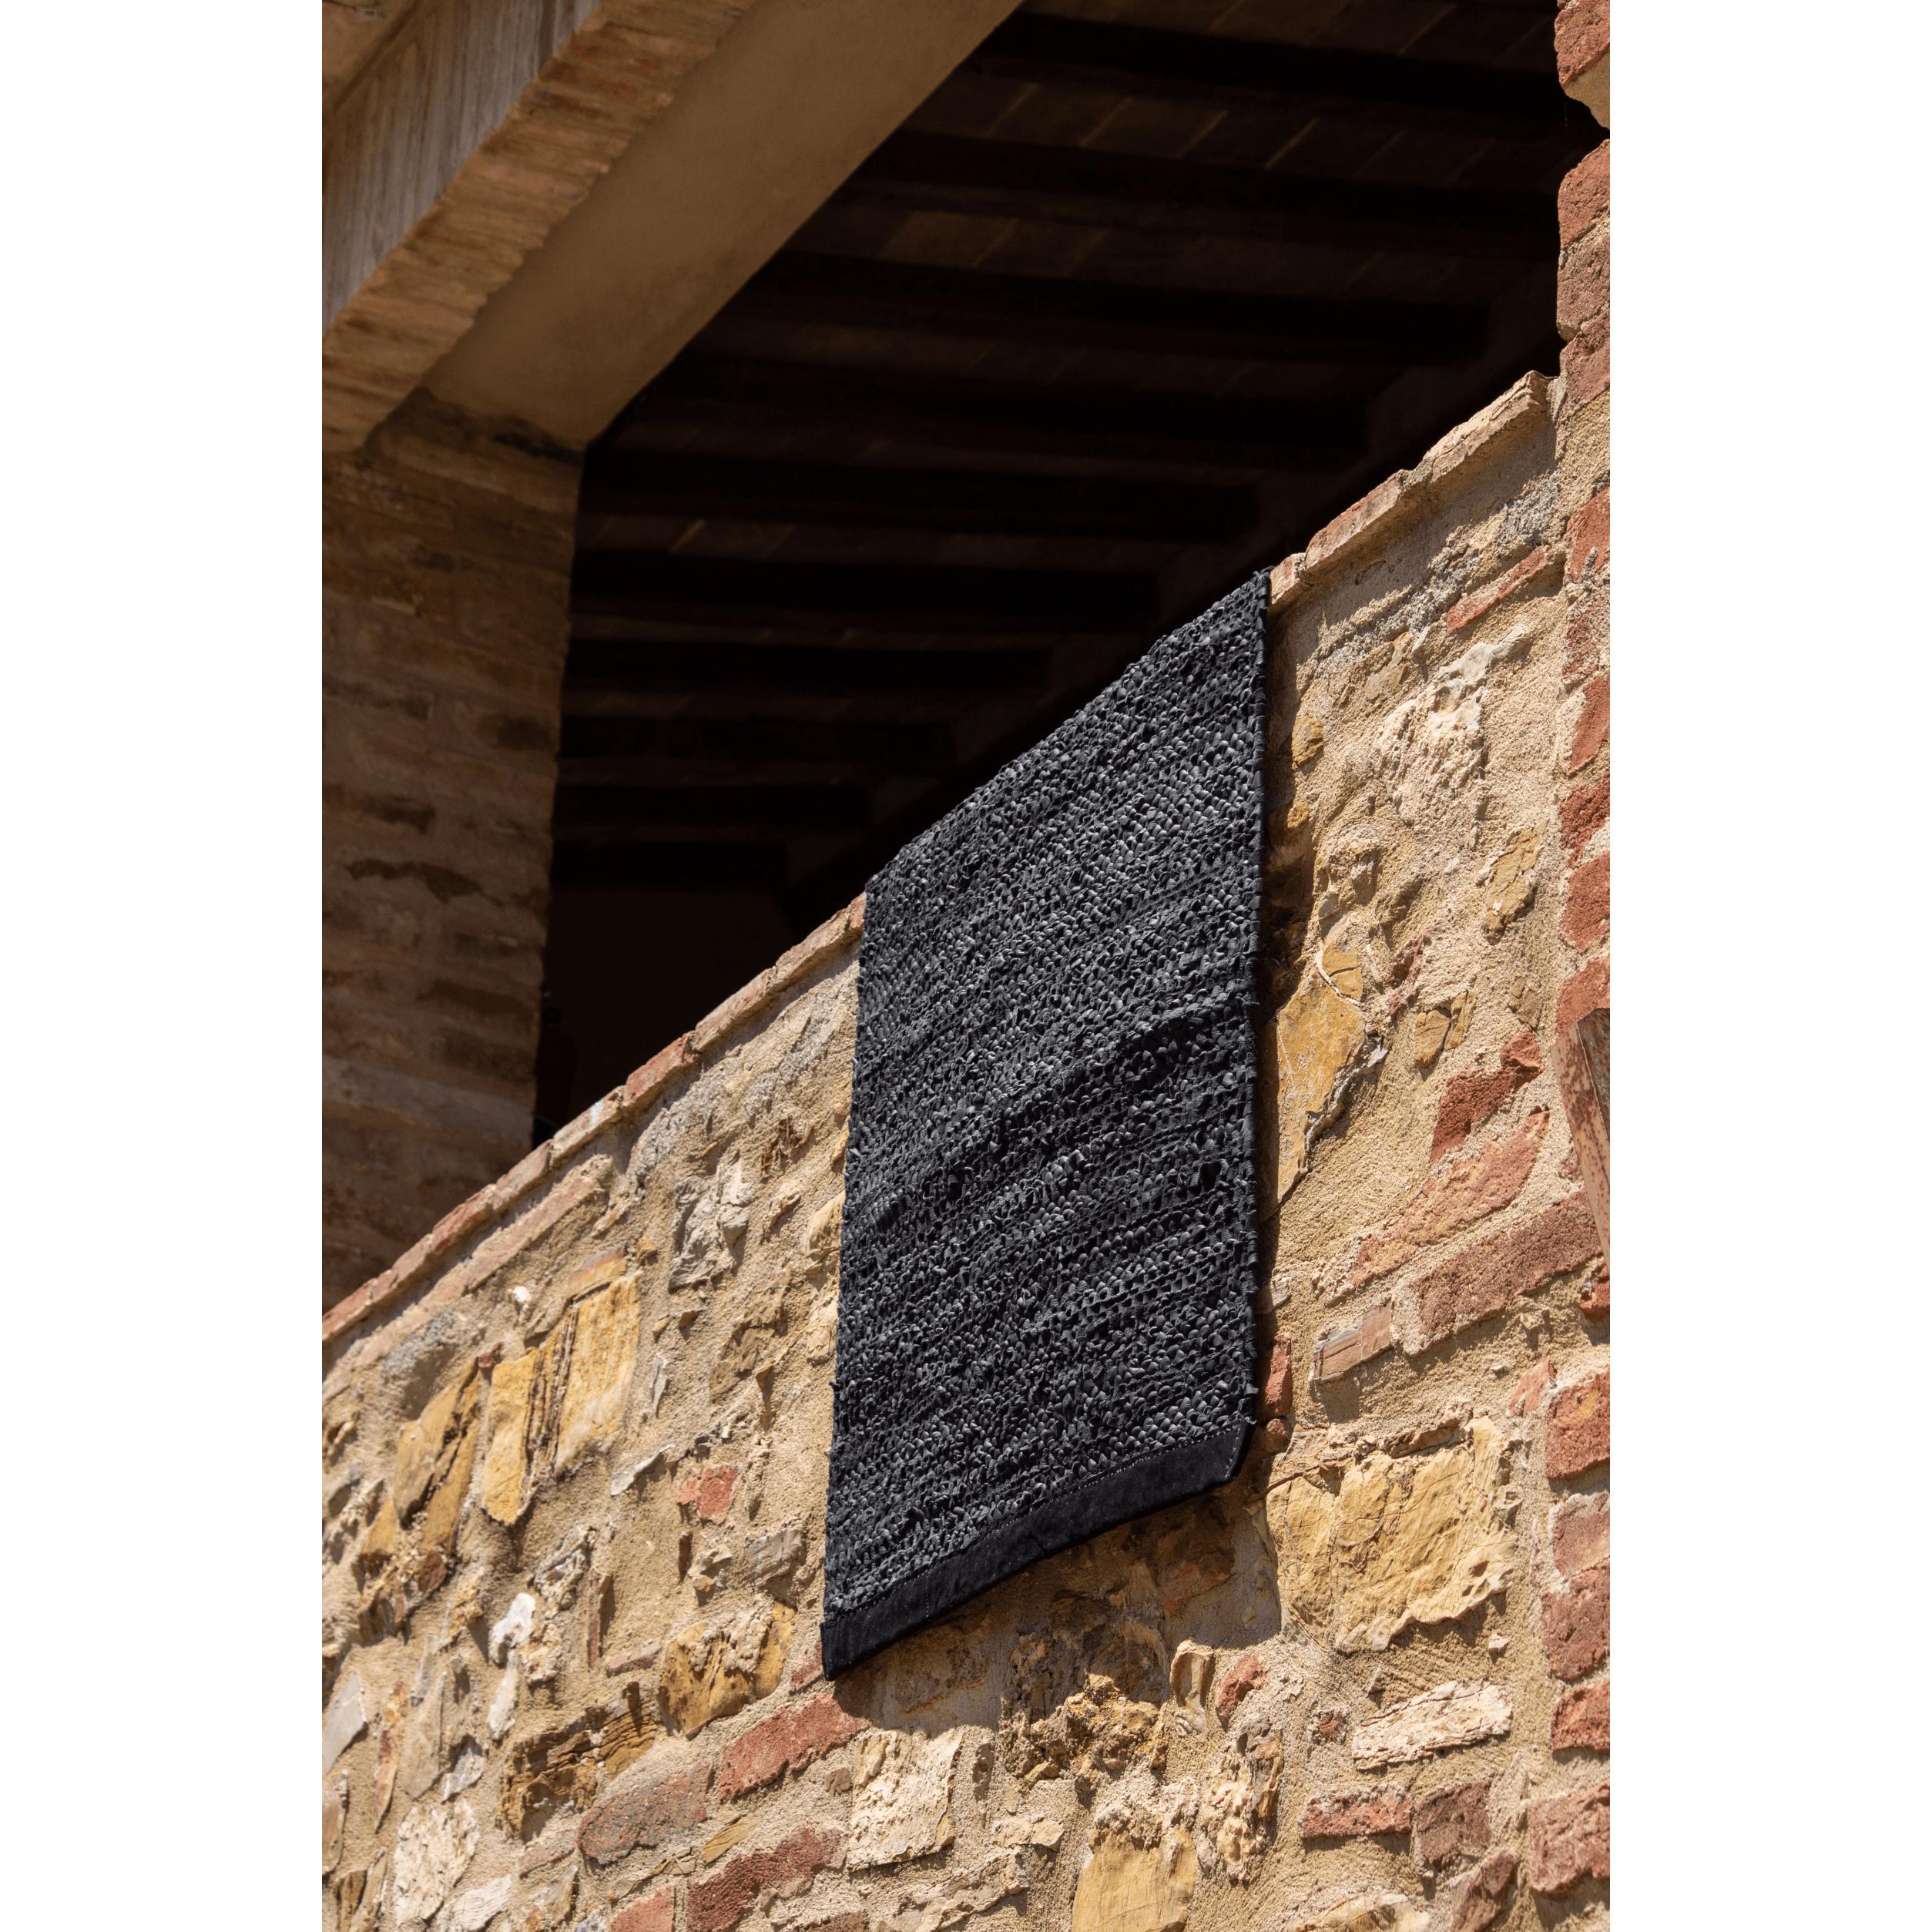 Alfombra de cuero sólido alfombra negra, 170 x 240 cm